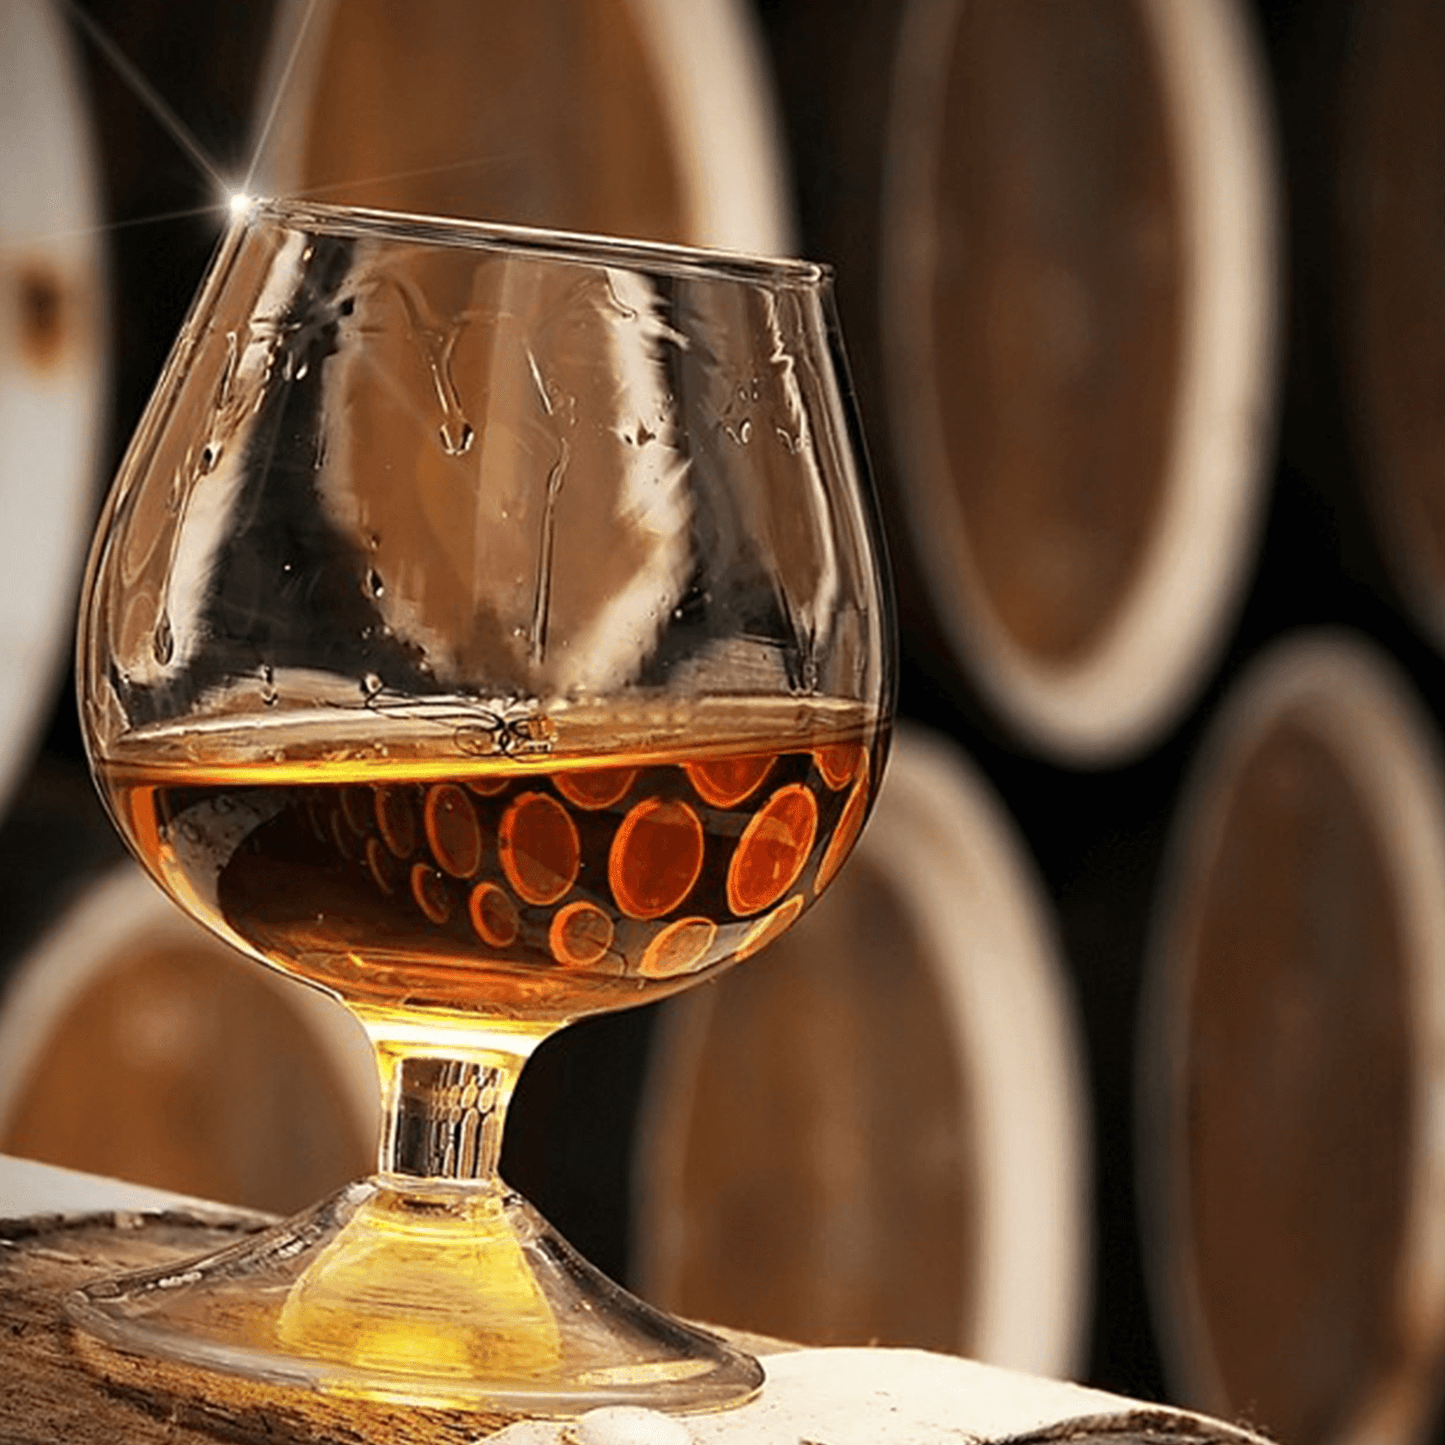 Louis Santo Premium Rum aus der Karibik | 18 Jahre Bourbon Cask